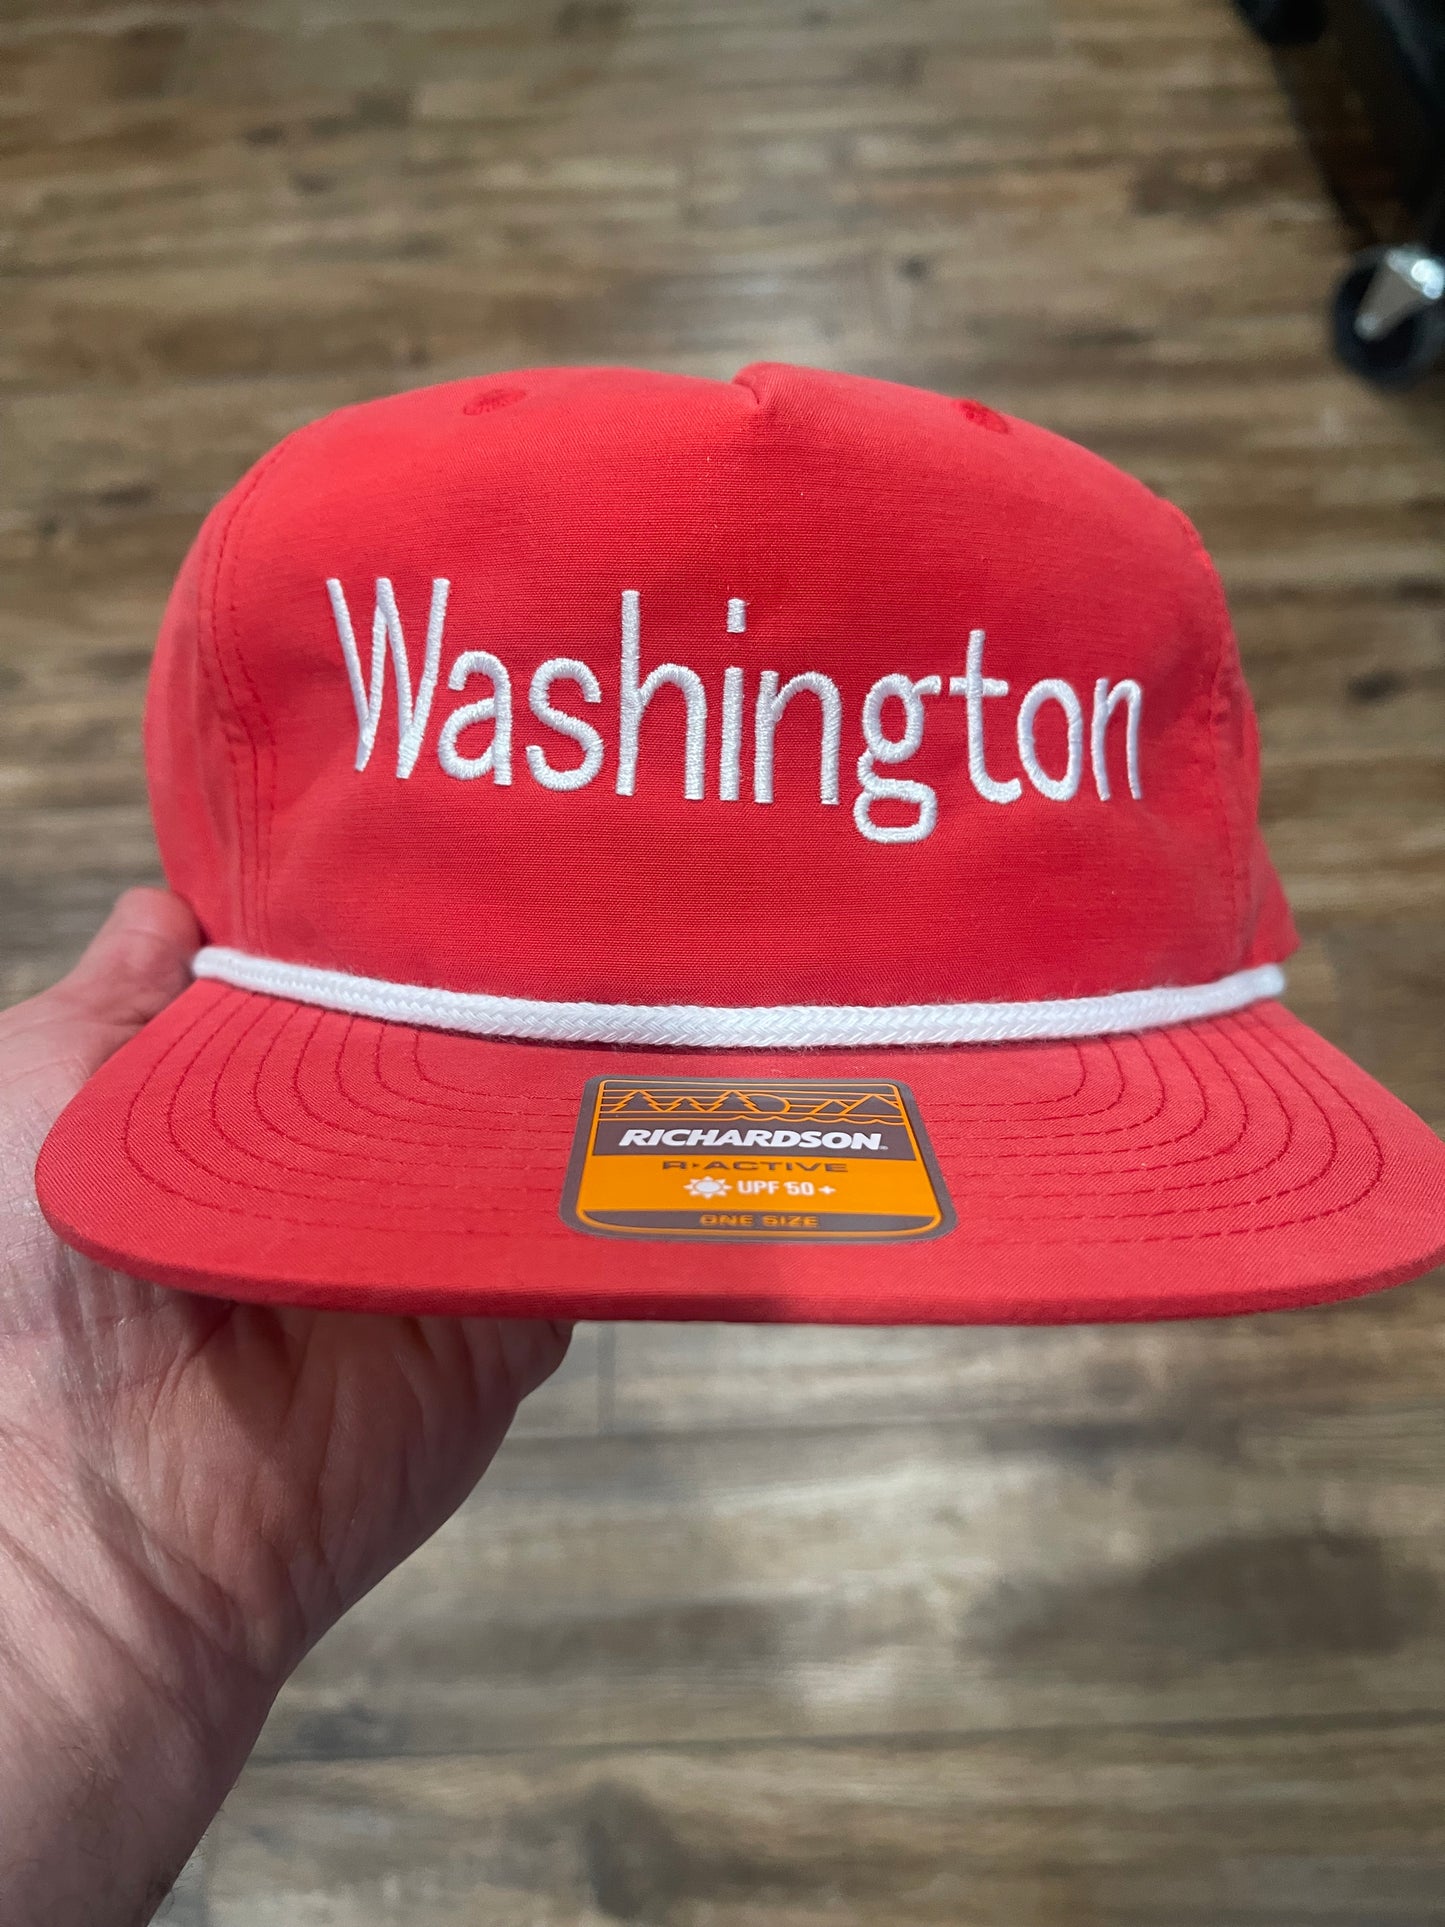 Dub Nation & Washington Richardson hat